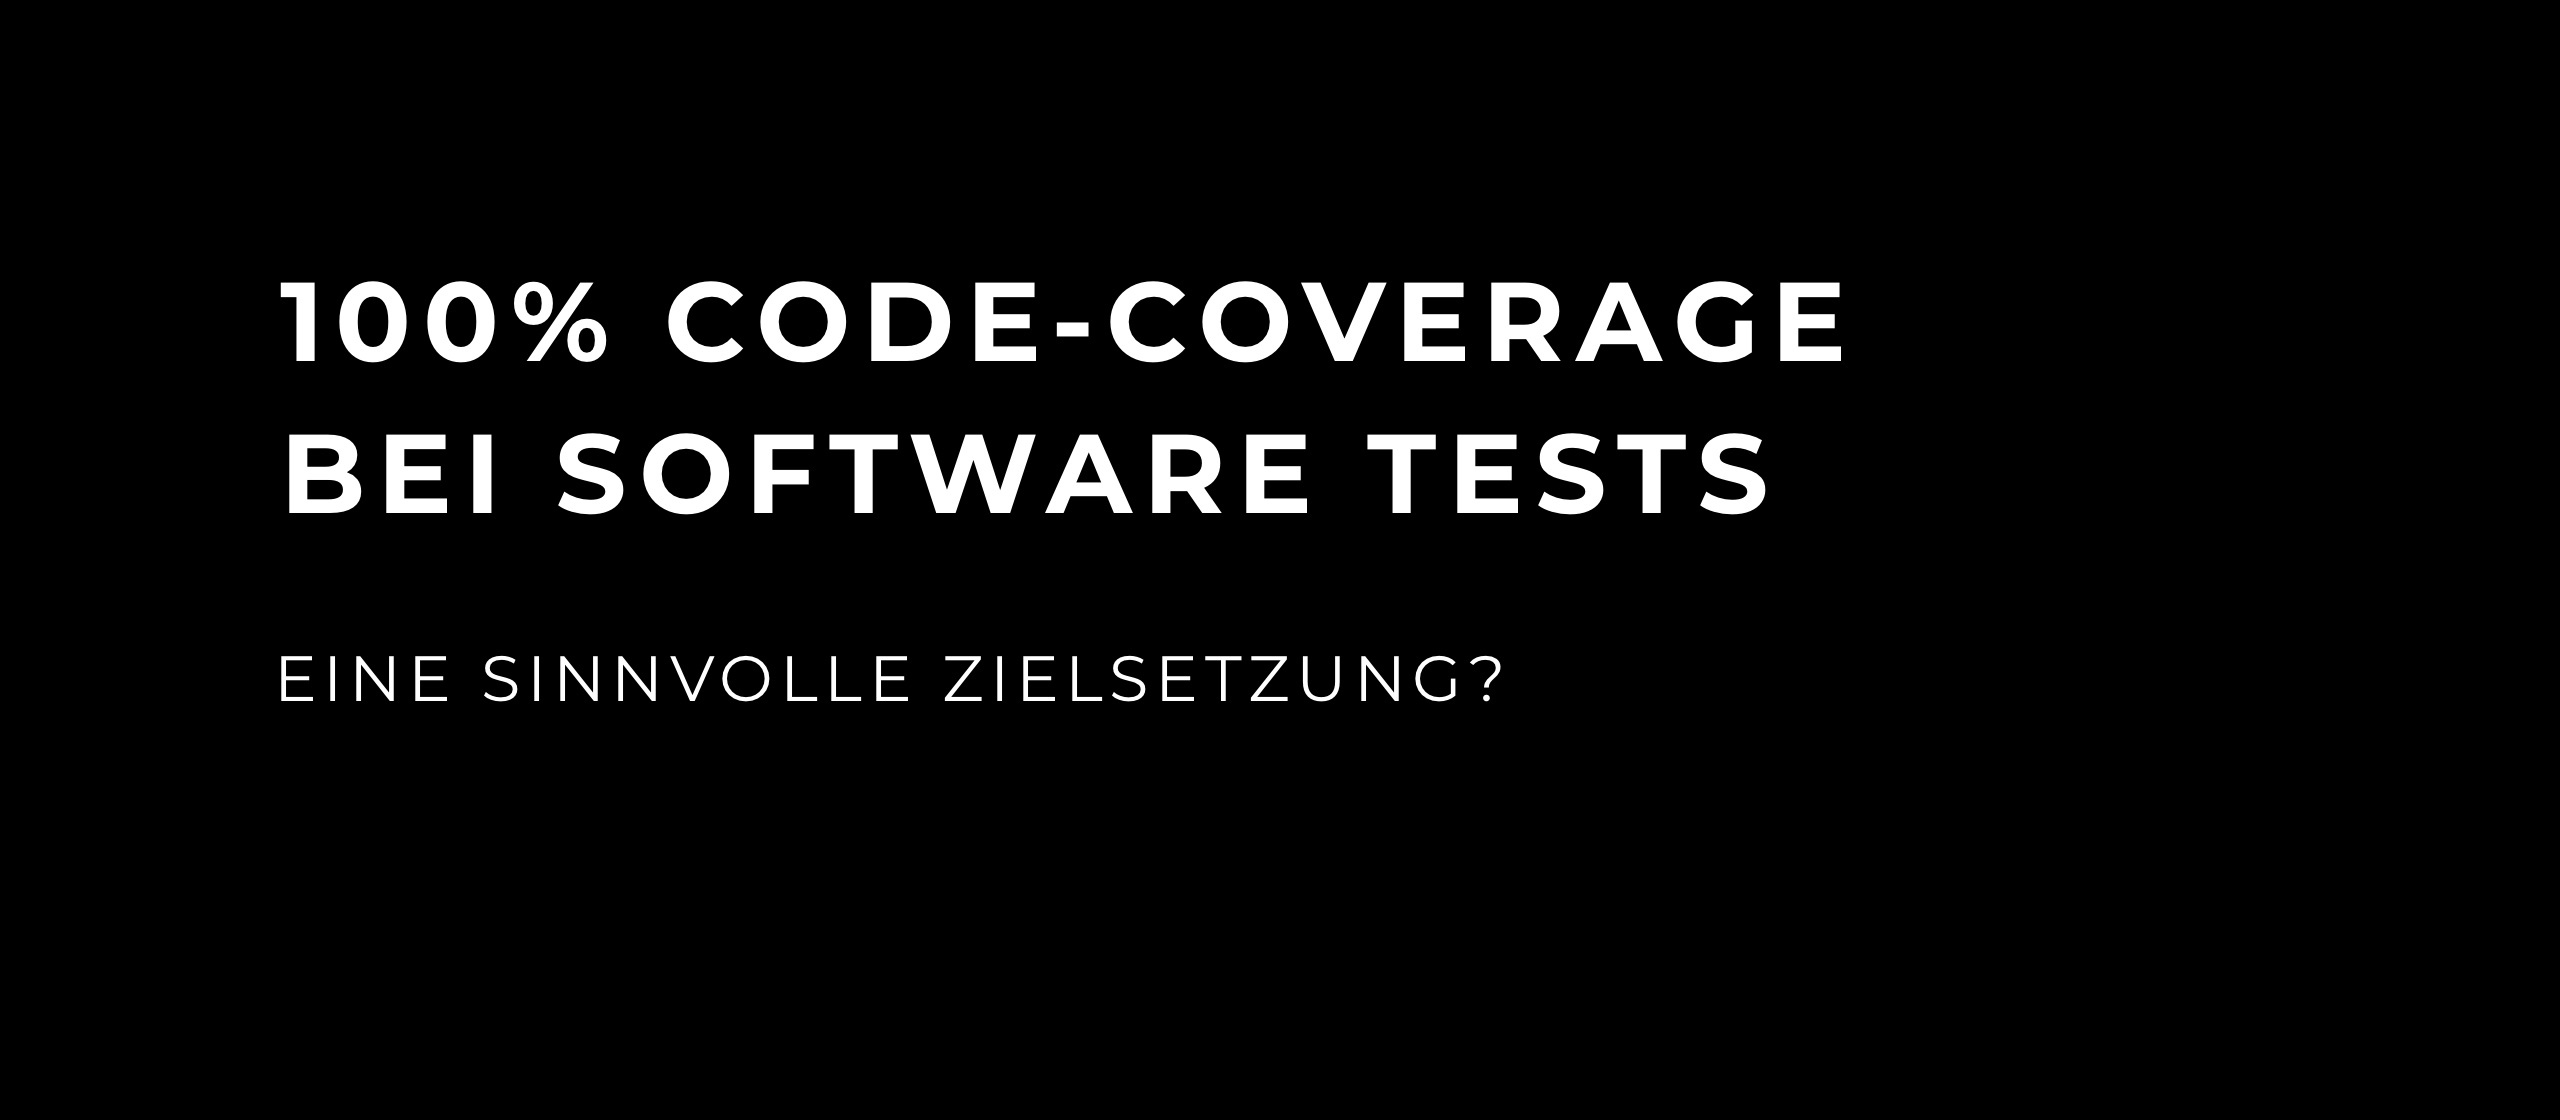 let’s dev Blog | 100% Code-Coverage bei Software Tests – eine sinnvolle Zielsetzung?